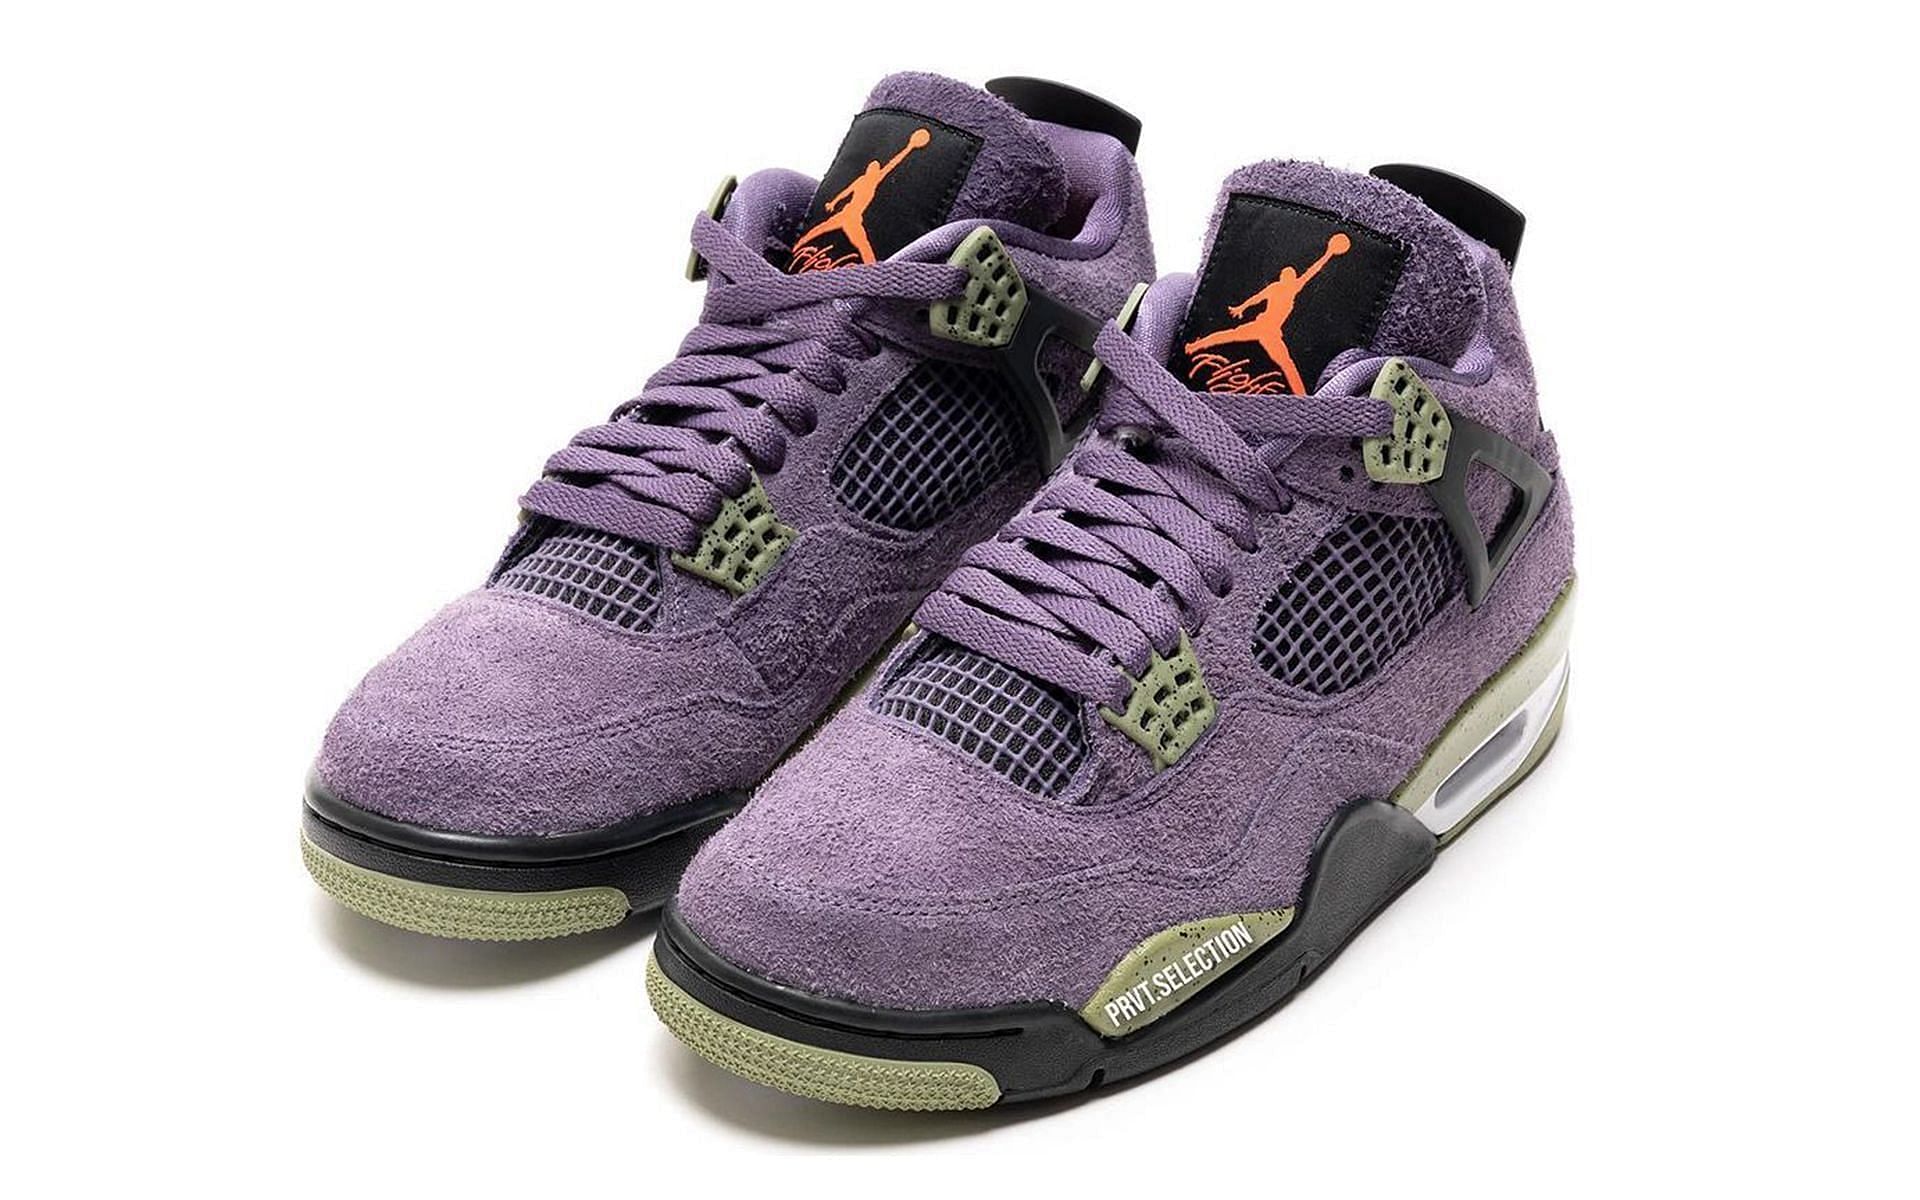 Air Jordan 4 Canyon Purple shoes (Image via Instagram/@prvt.selection)